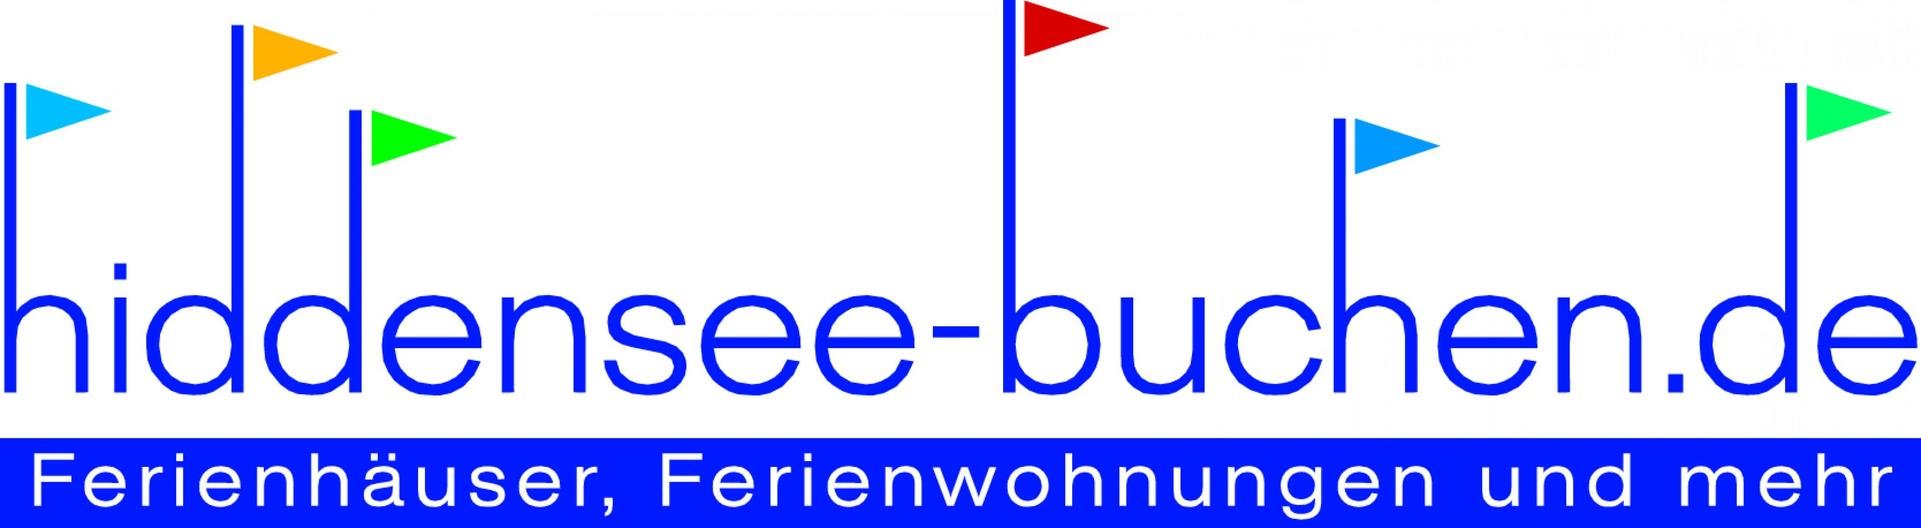 Hiddensee-buchen.de Logo